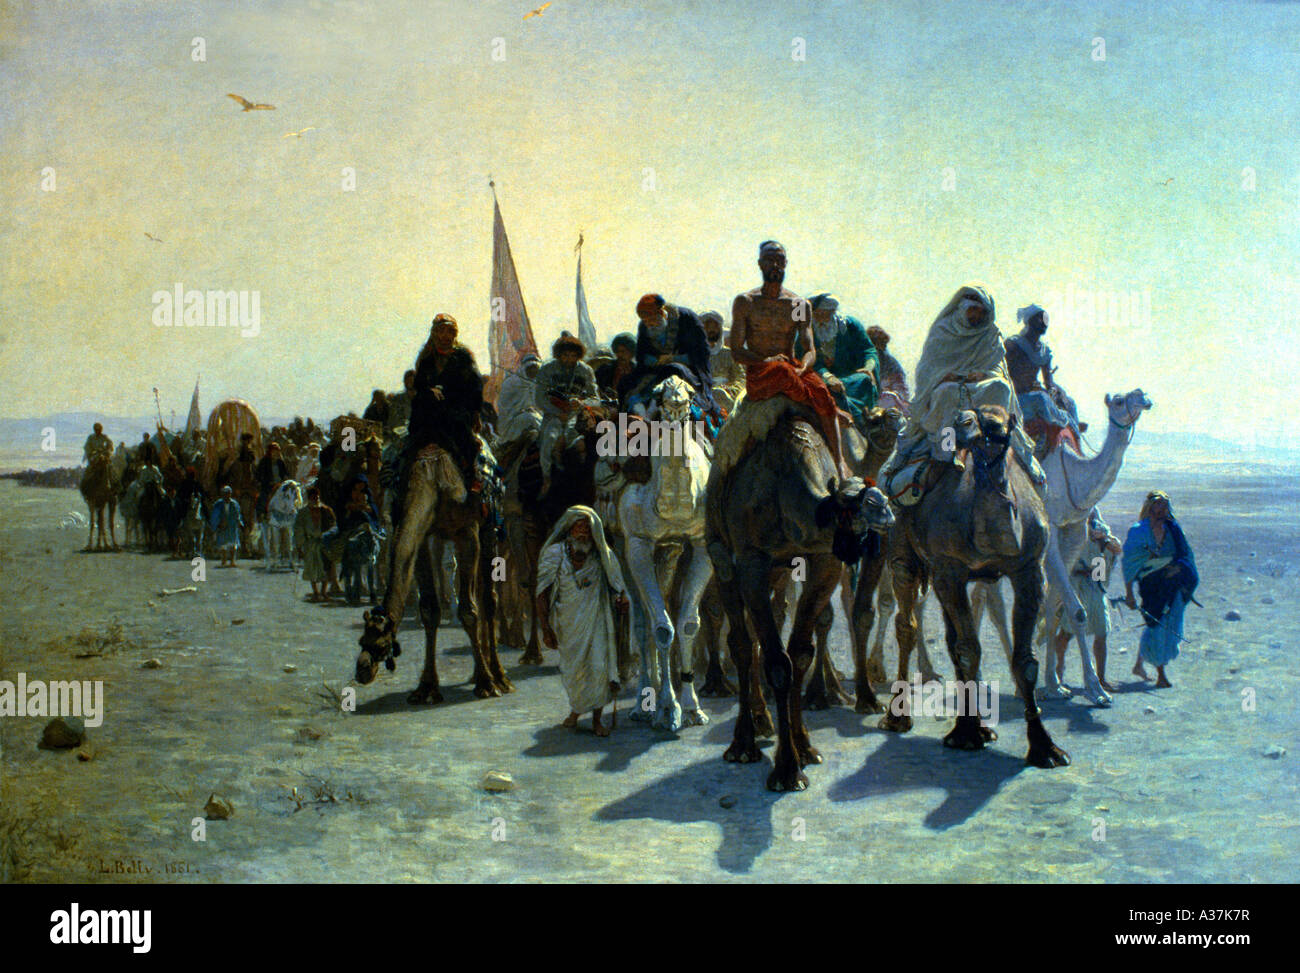 Orientalische Malerei Kamel Zug von Leon Auguste Adolphe Bauch 1861 Pilgirms nach Mekka gehen Stockfoto